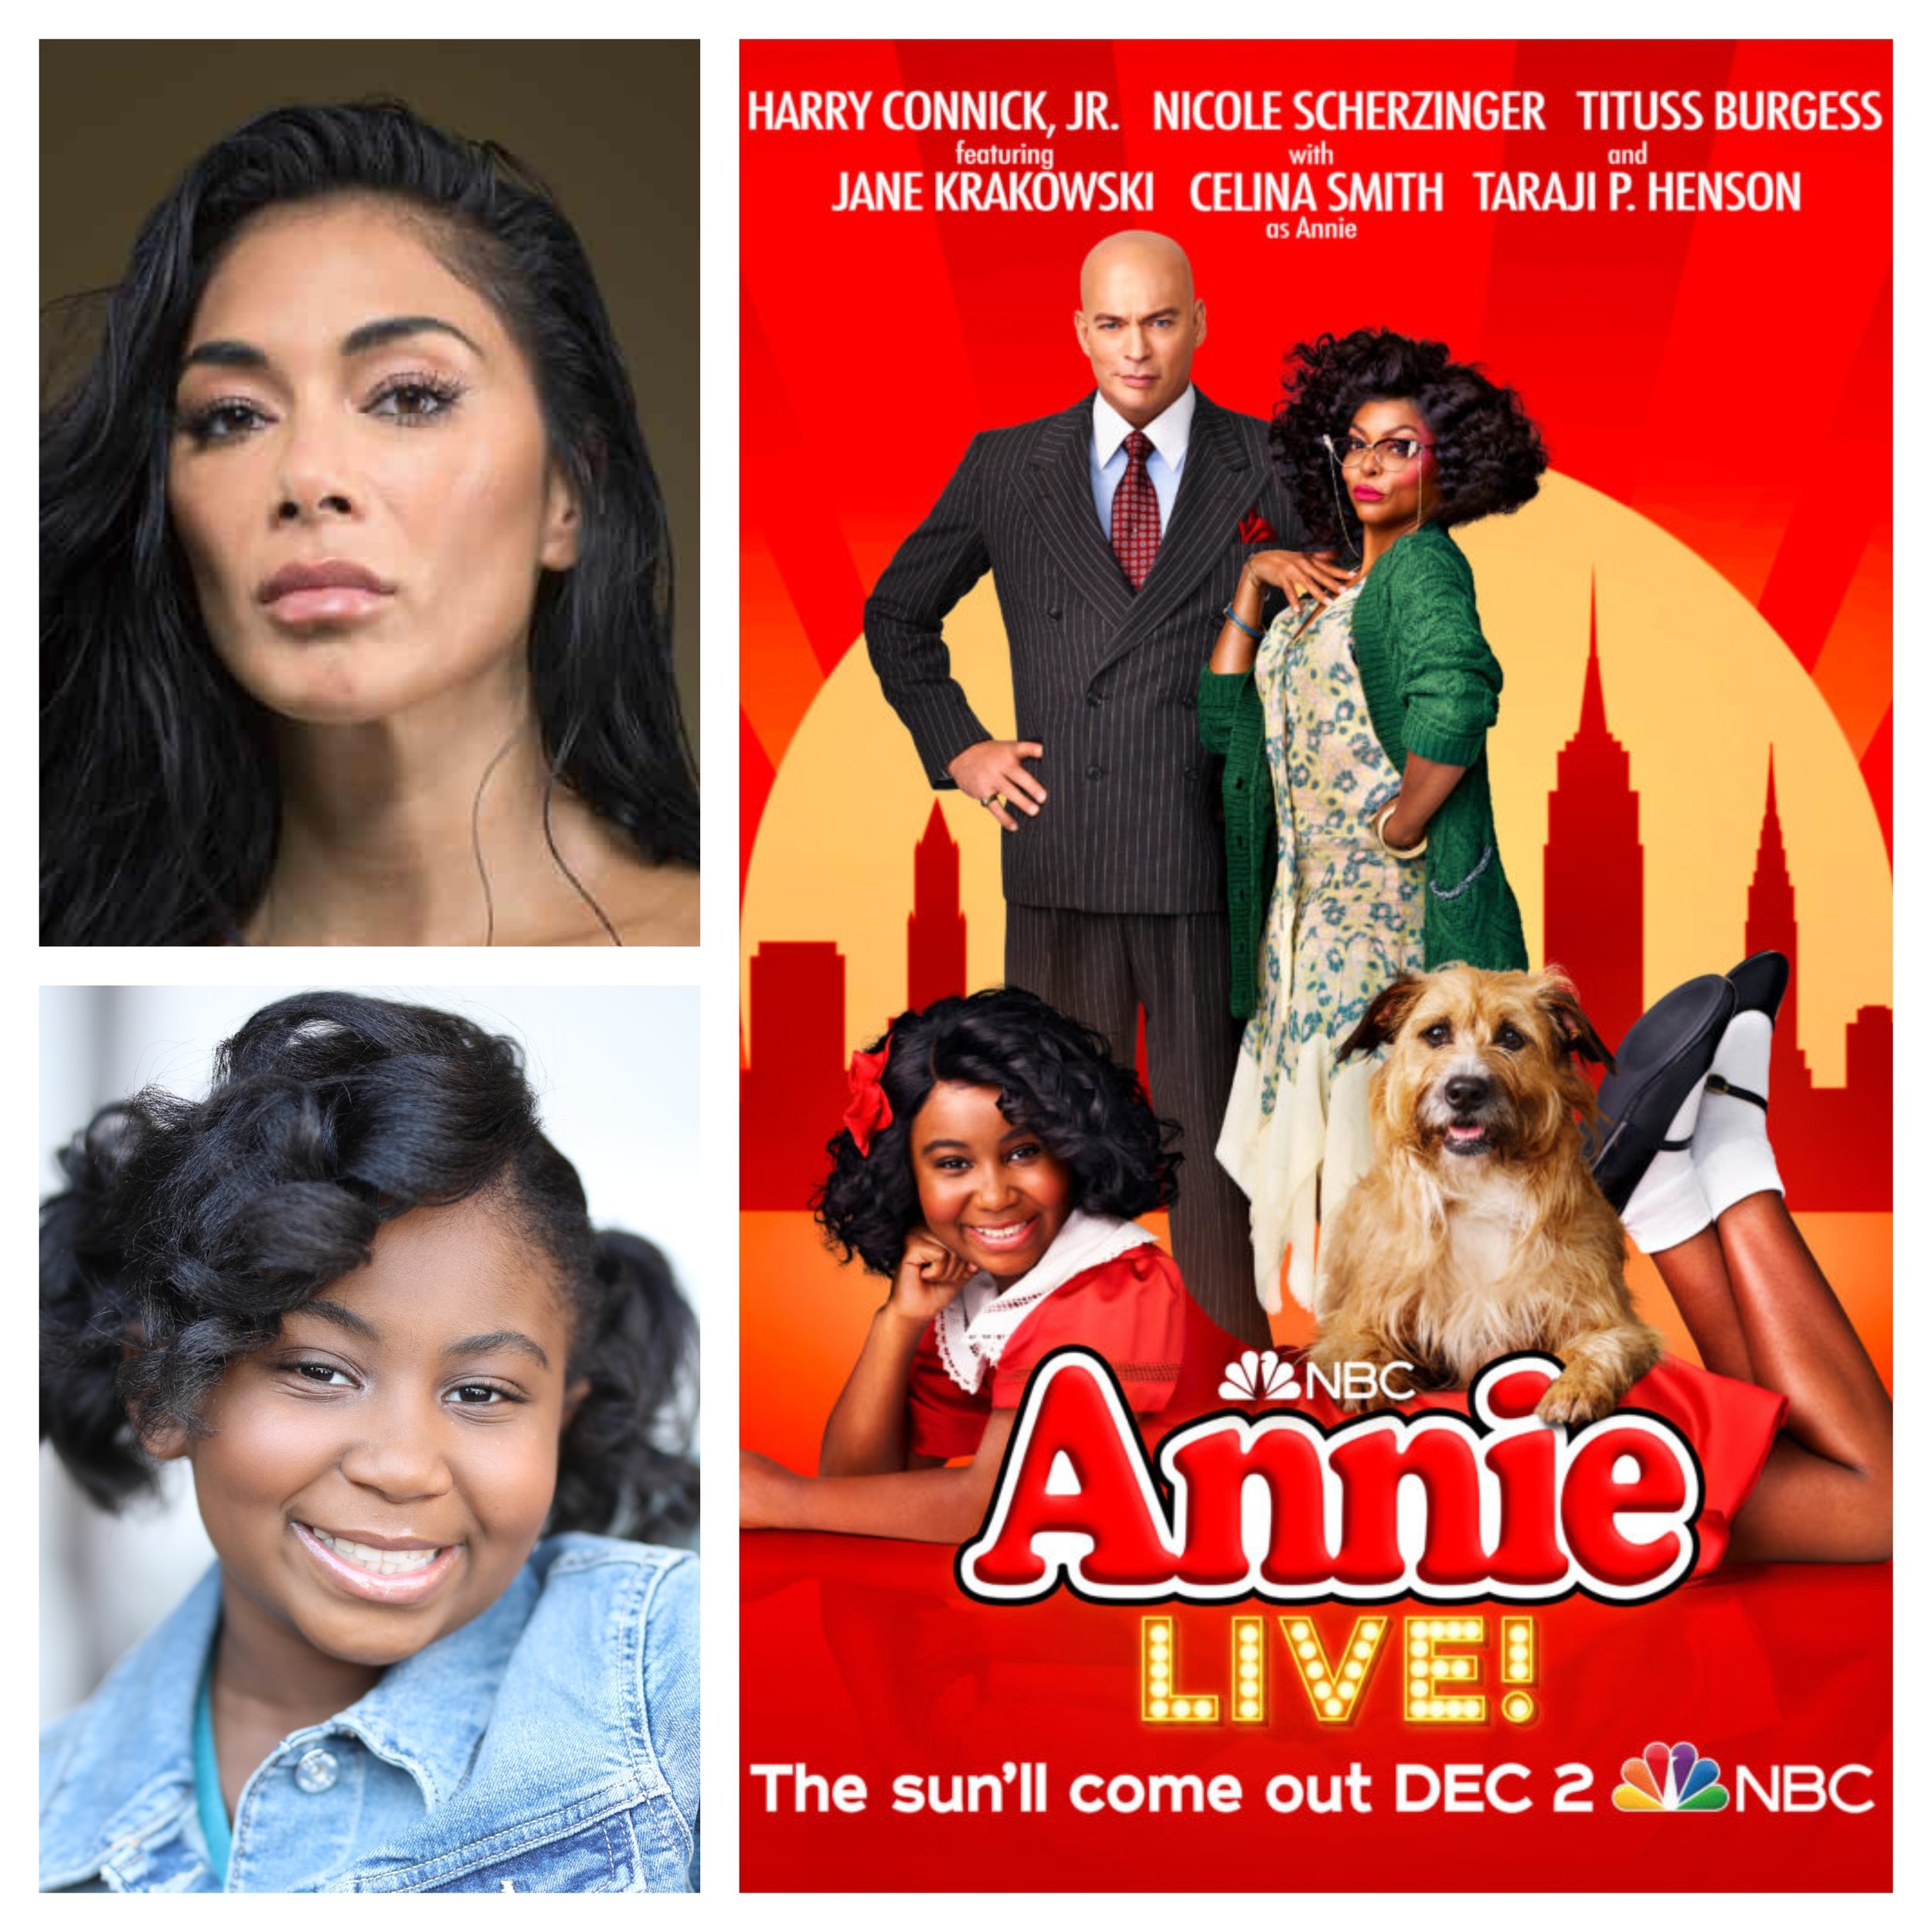 Annie the Movie Musical (2014) DVD - Annie the Musical